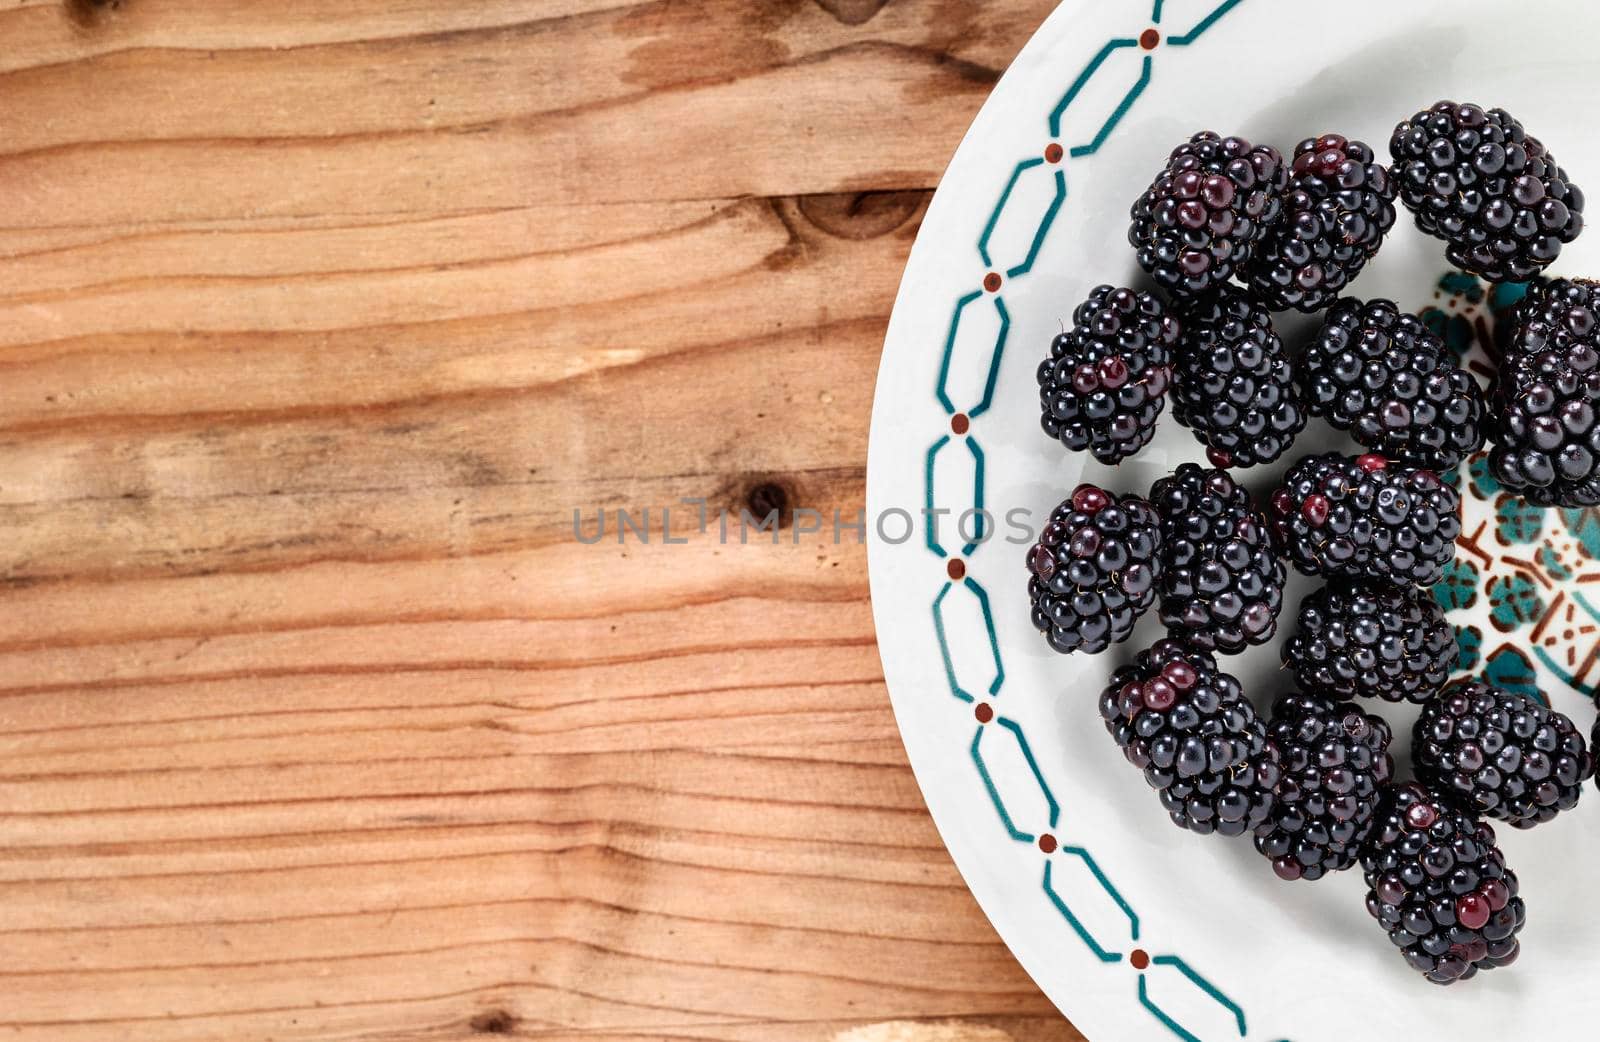 Blackberries on plate by victimewalker